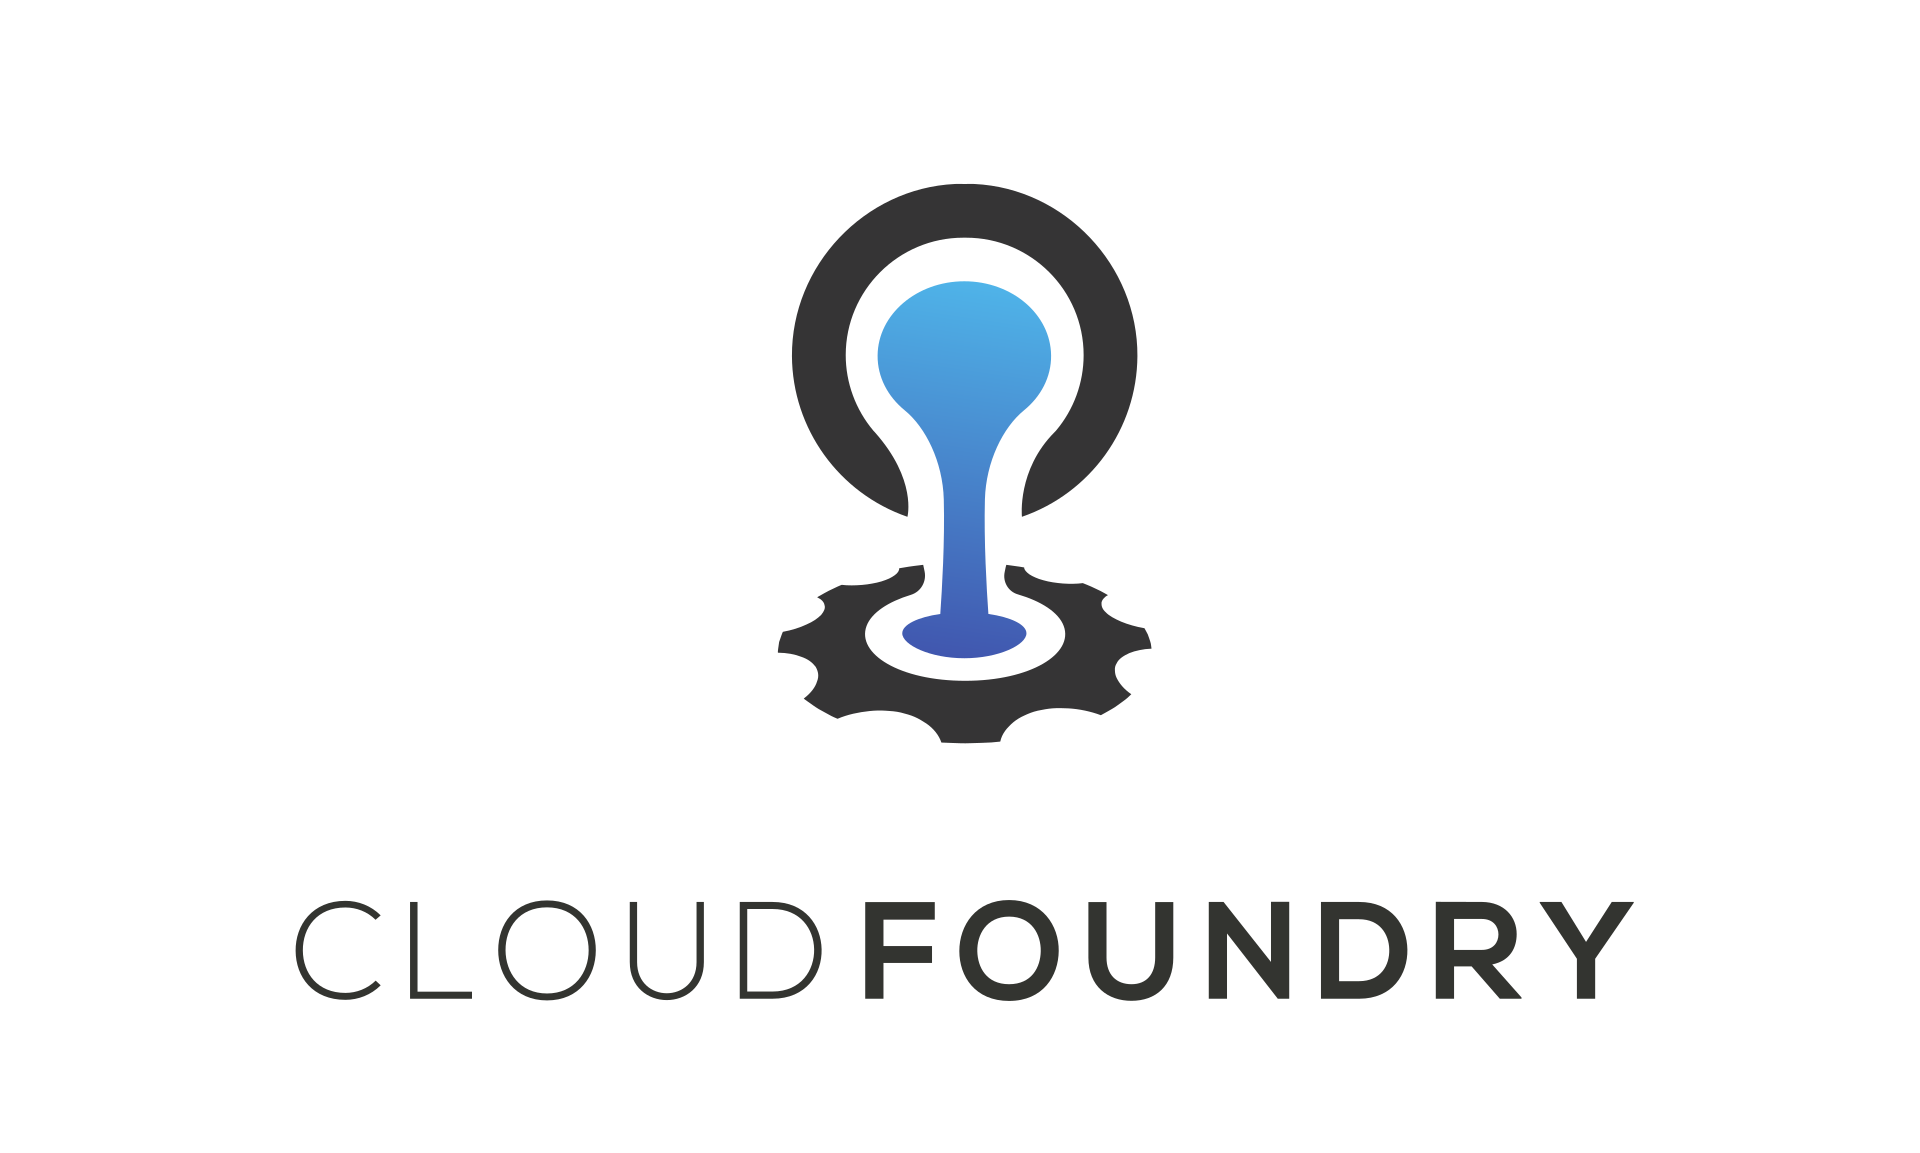 Cloud Foundry - облачная PaaS-платформа разработки ПО с открытым исходным кодом как услуга